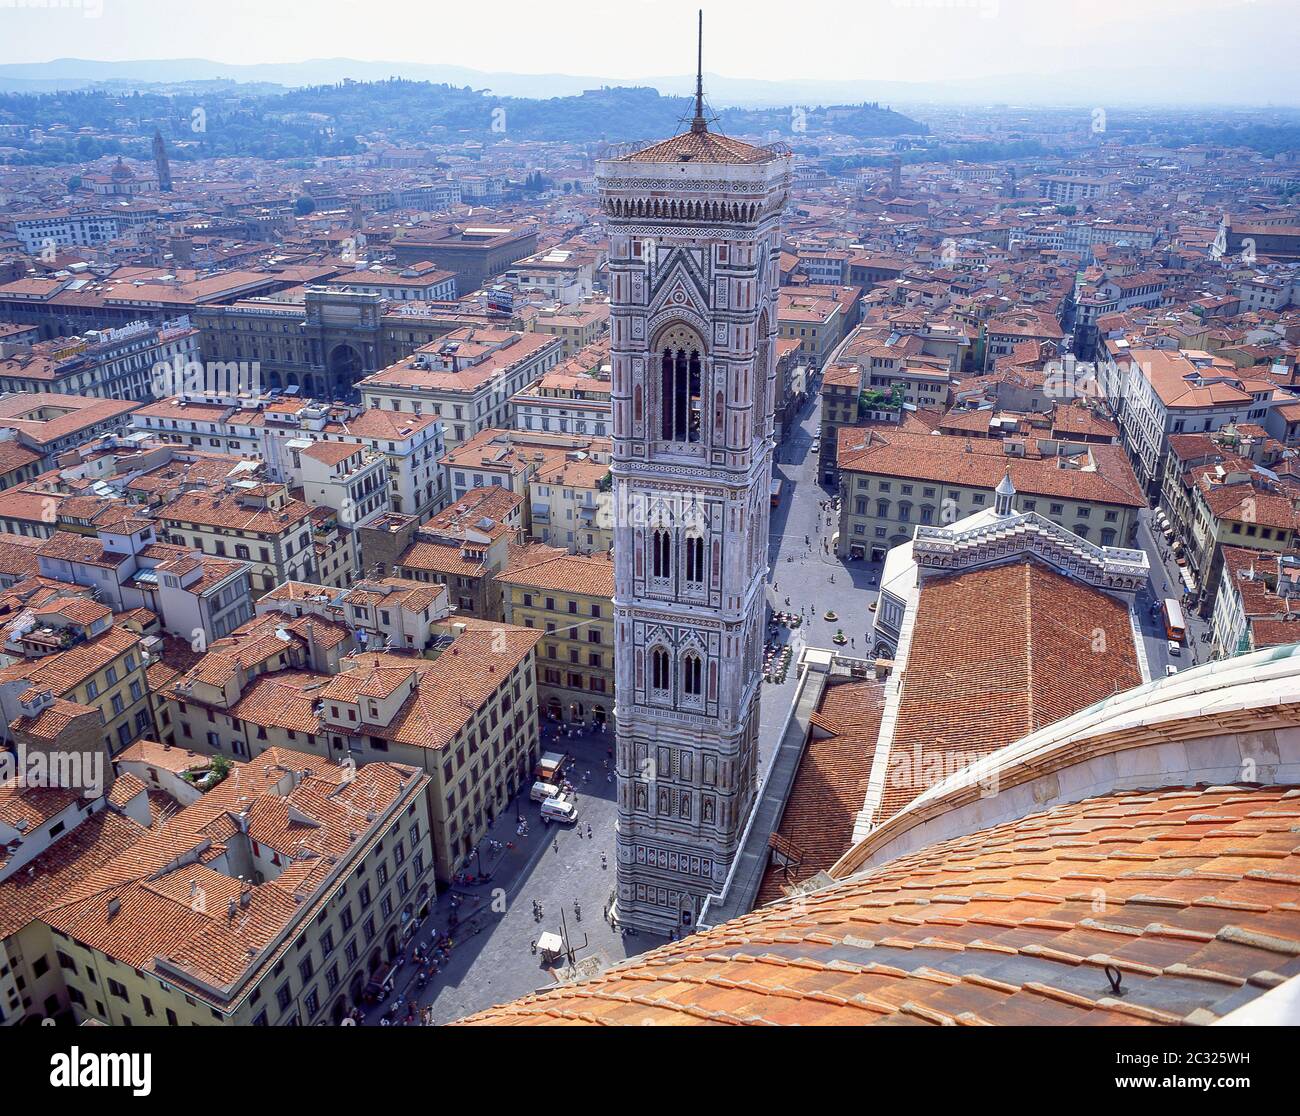 Vue panoramique de la vieille ville depuis la cathédrale de Santa Maria del Fiore (Duomo), Florence (Firenze), région Toscane, Italie Banque D'Images